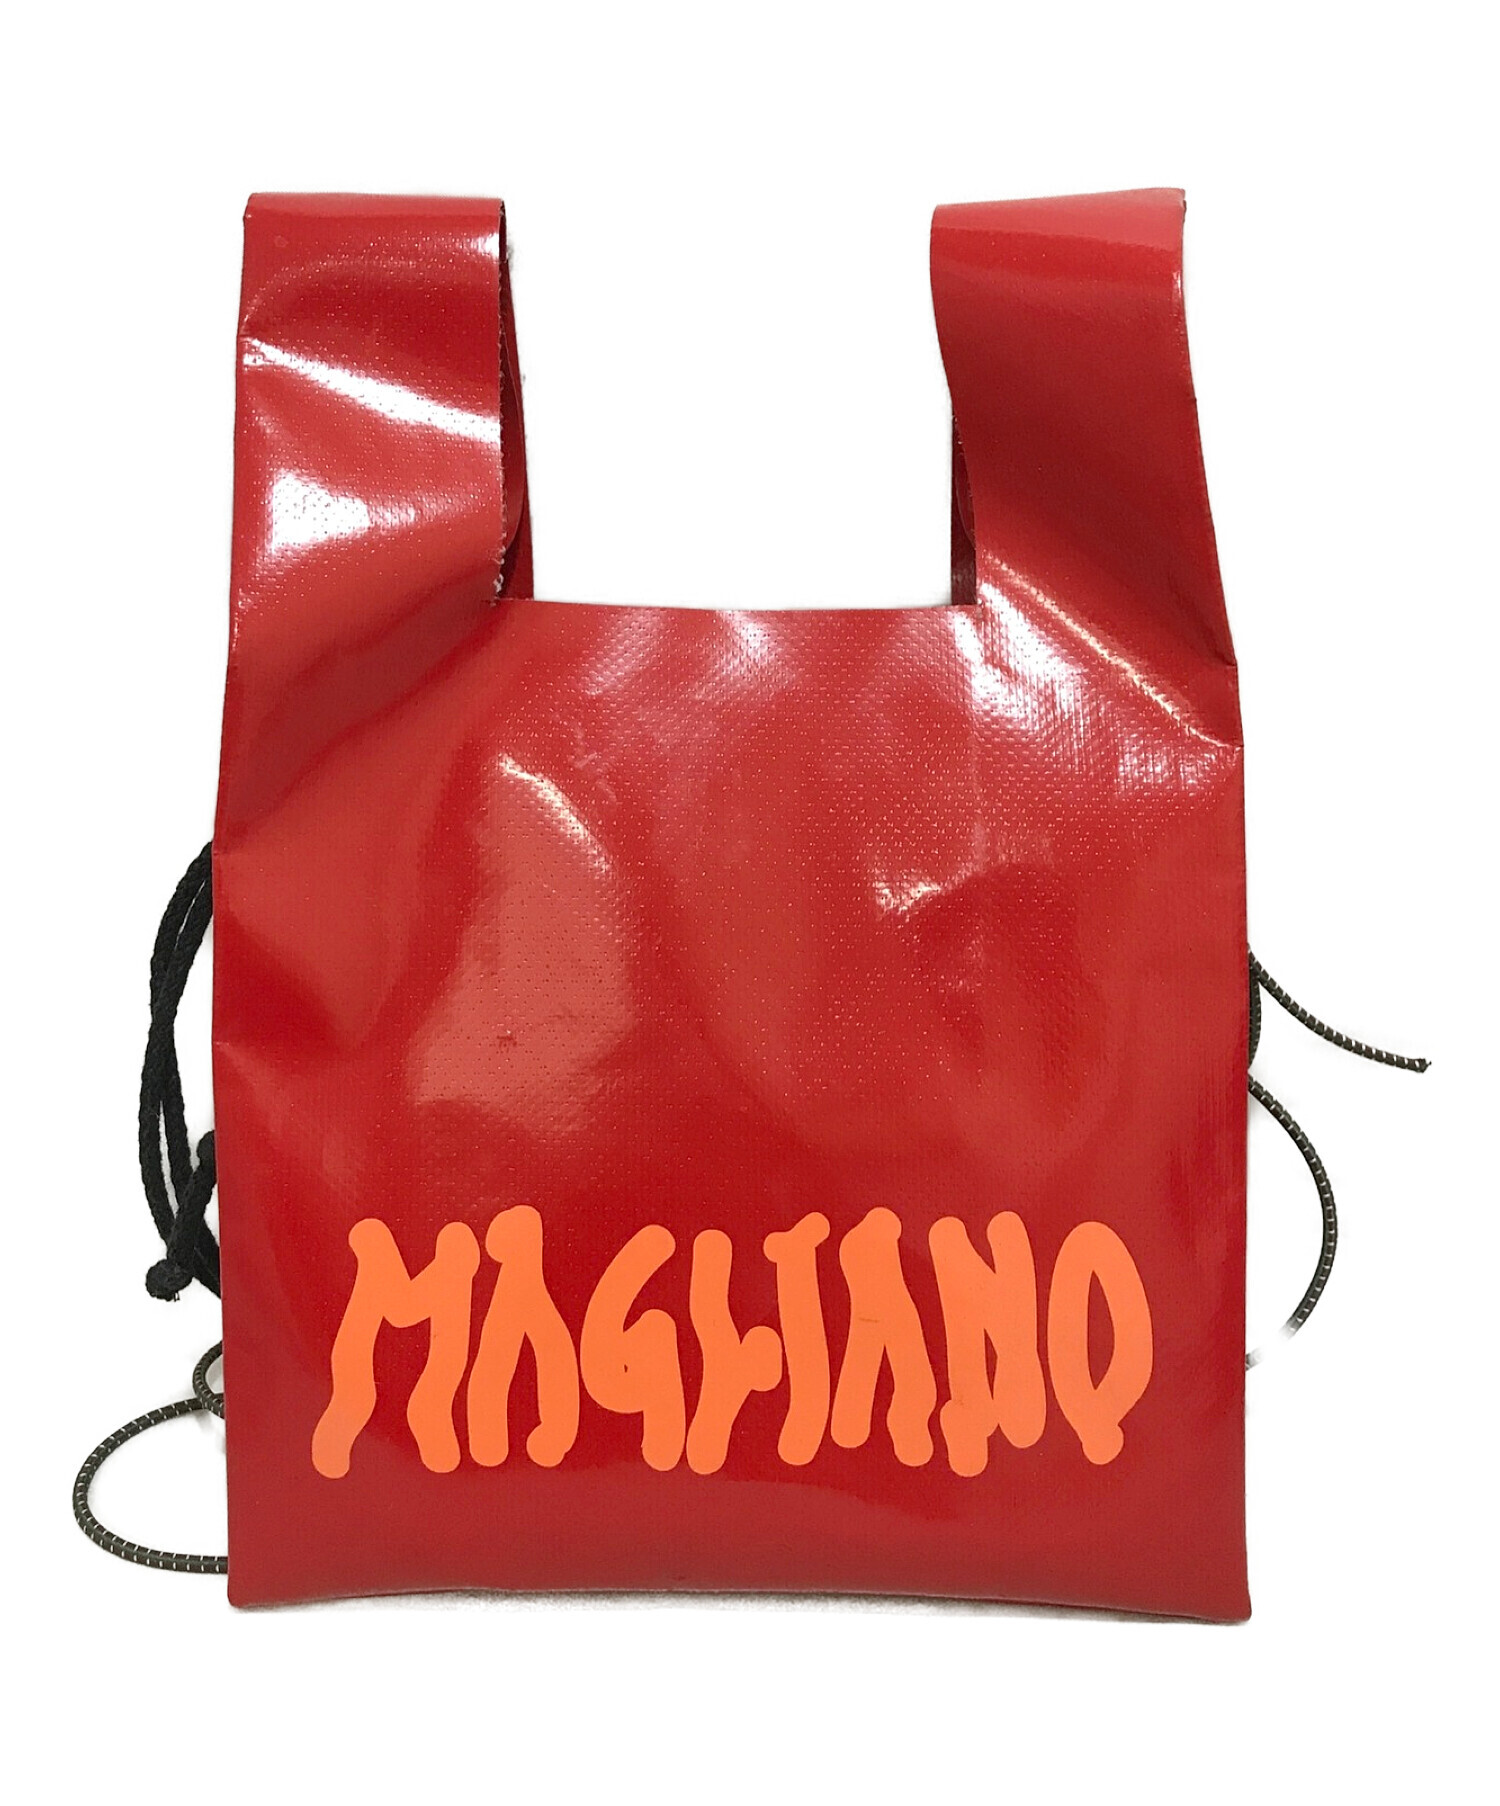 Magliano マリアーノ バッグ - ショルダーバッグ